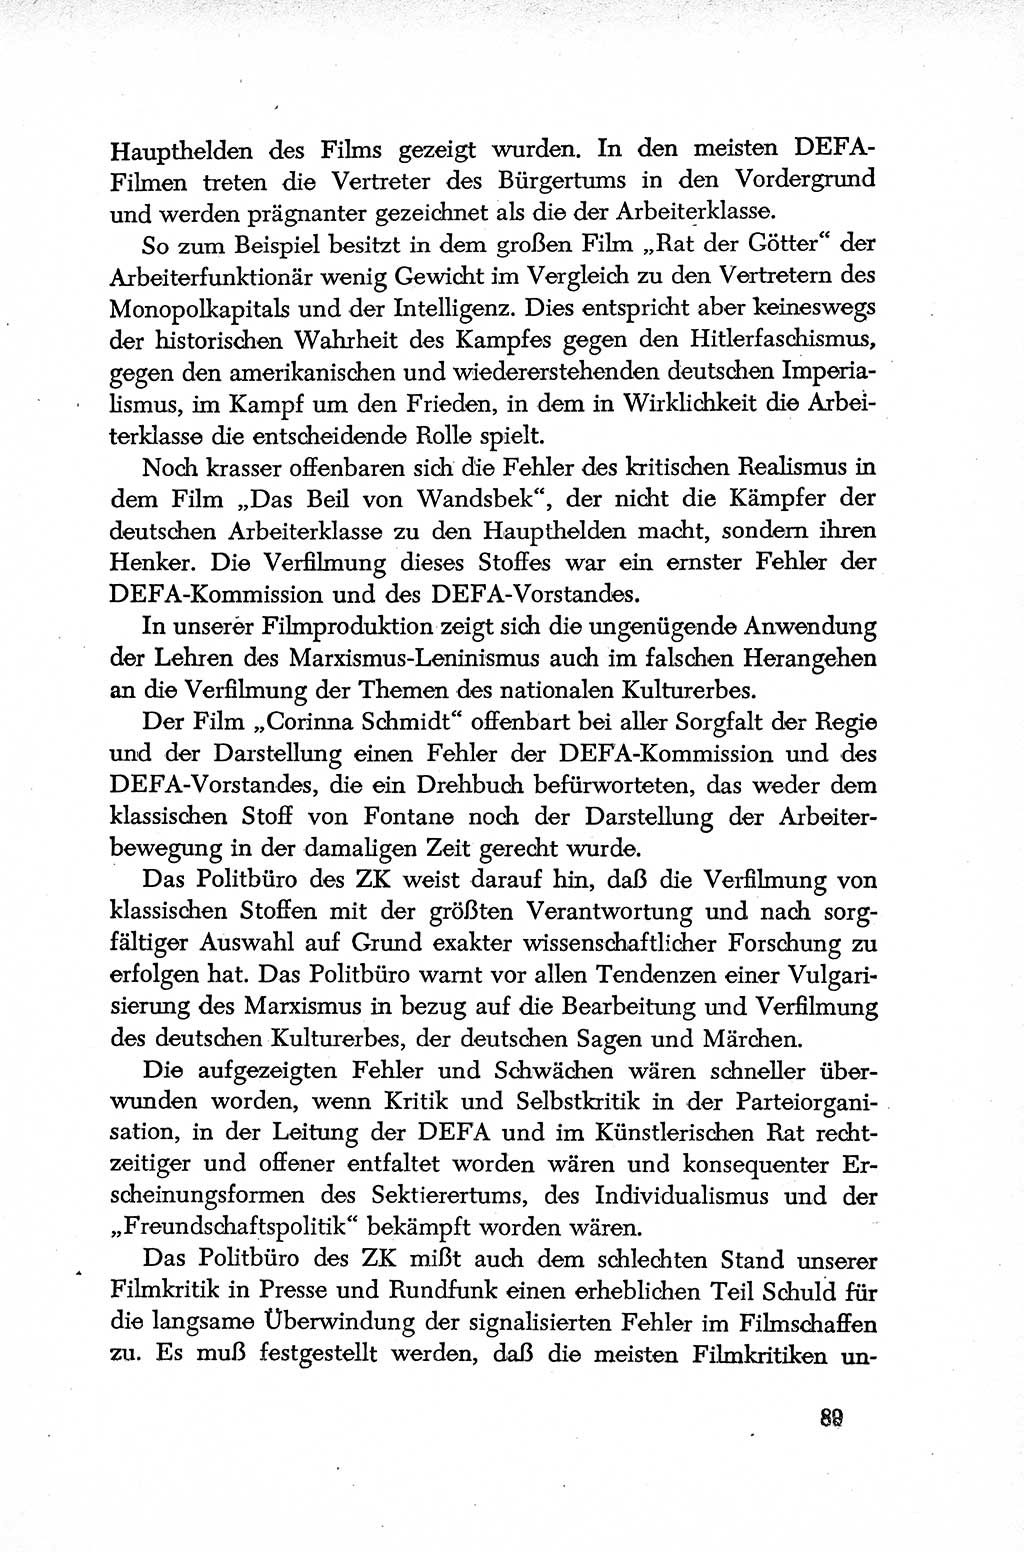 Dokumente der Sozialistischen Einheitspartei Deutschlands (SED) [Deutsche Demokratische Republik (DDR)] 1952-1953, Seite 89 (Dok. SED DDR 1952-1953, S. 89)